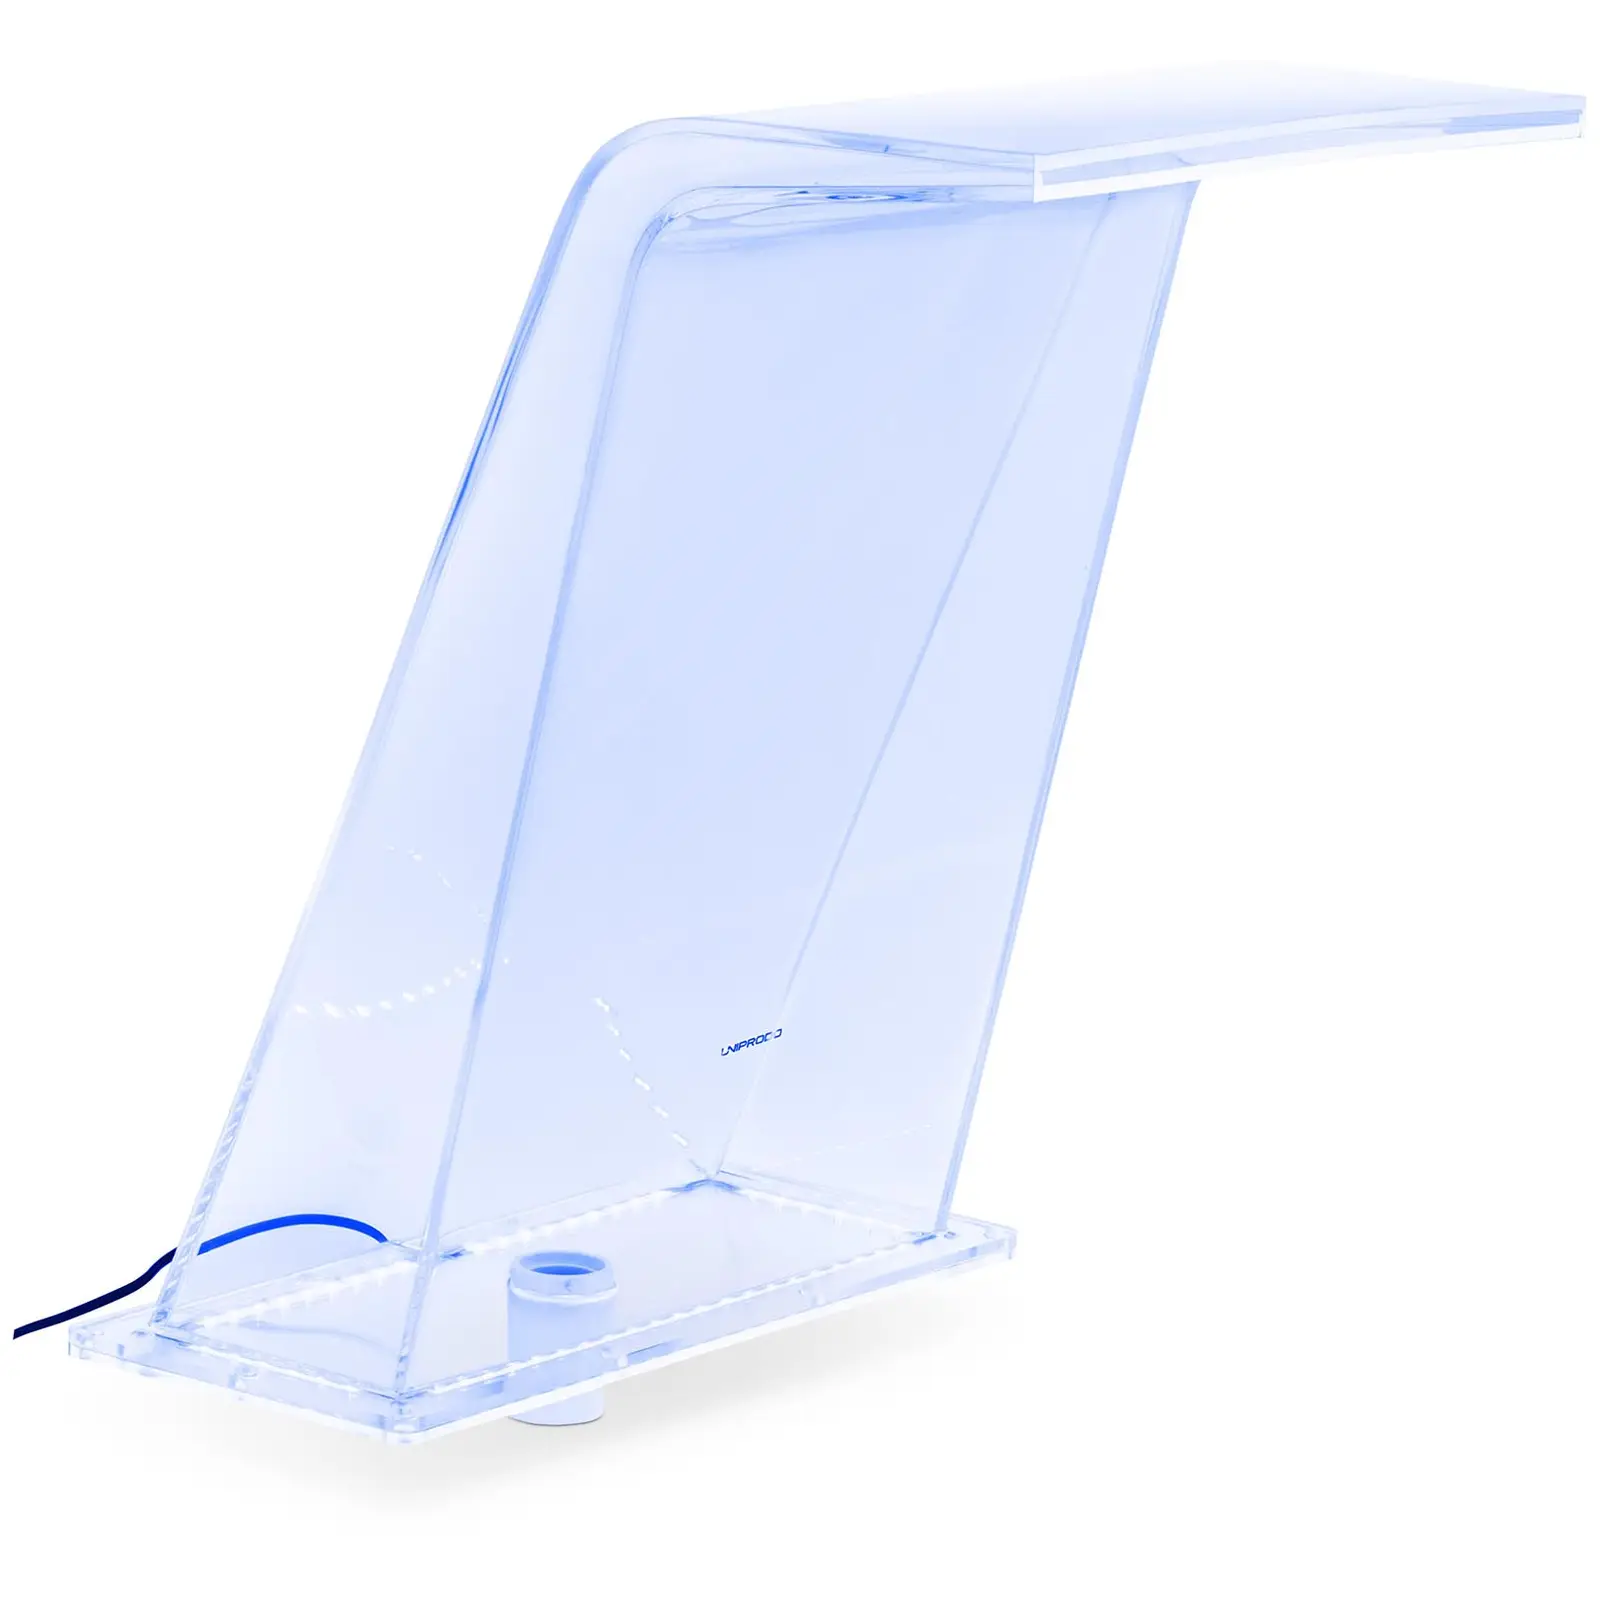 Chrlič vody 45 cm LED osvětlení modrá/bílá barva - Chrliče vody Uniprodo